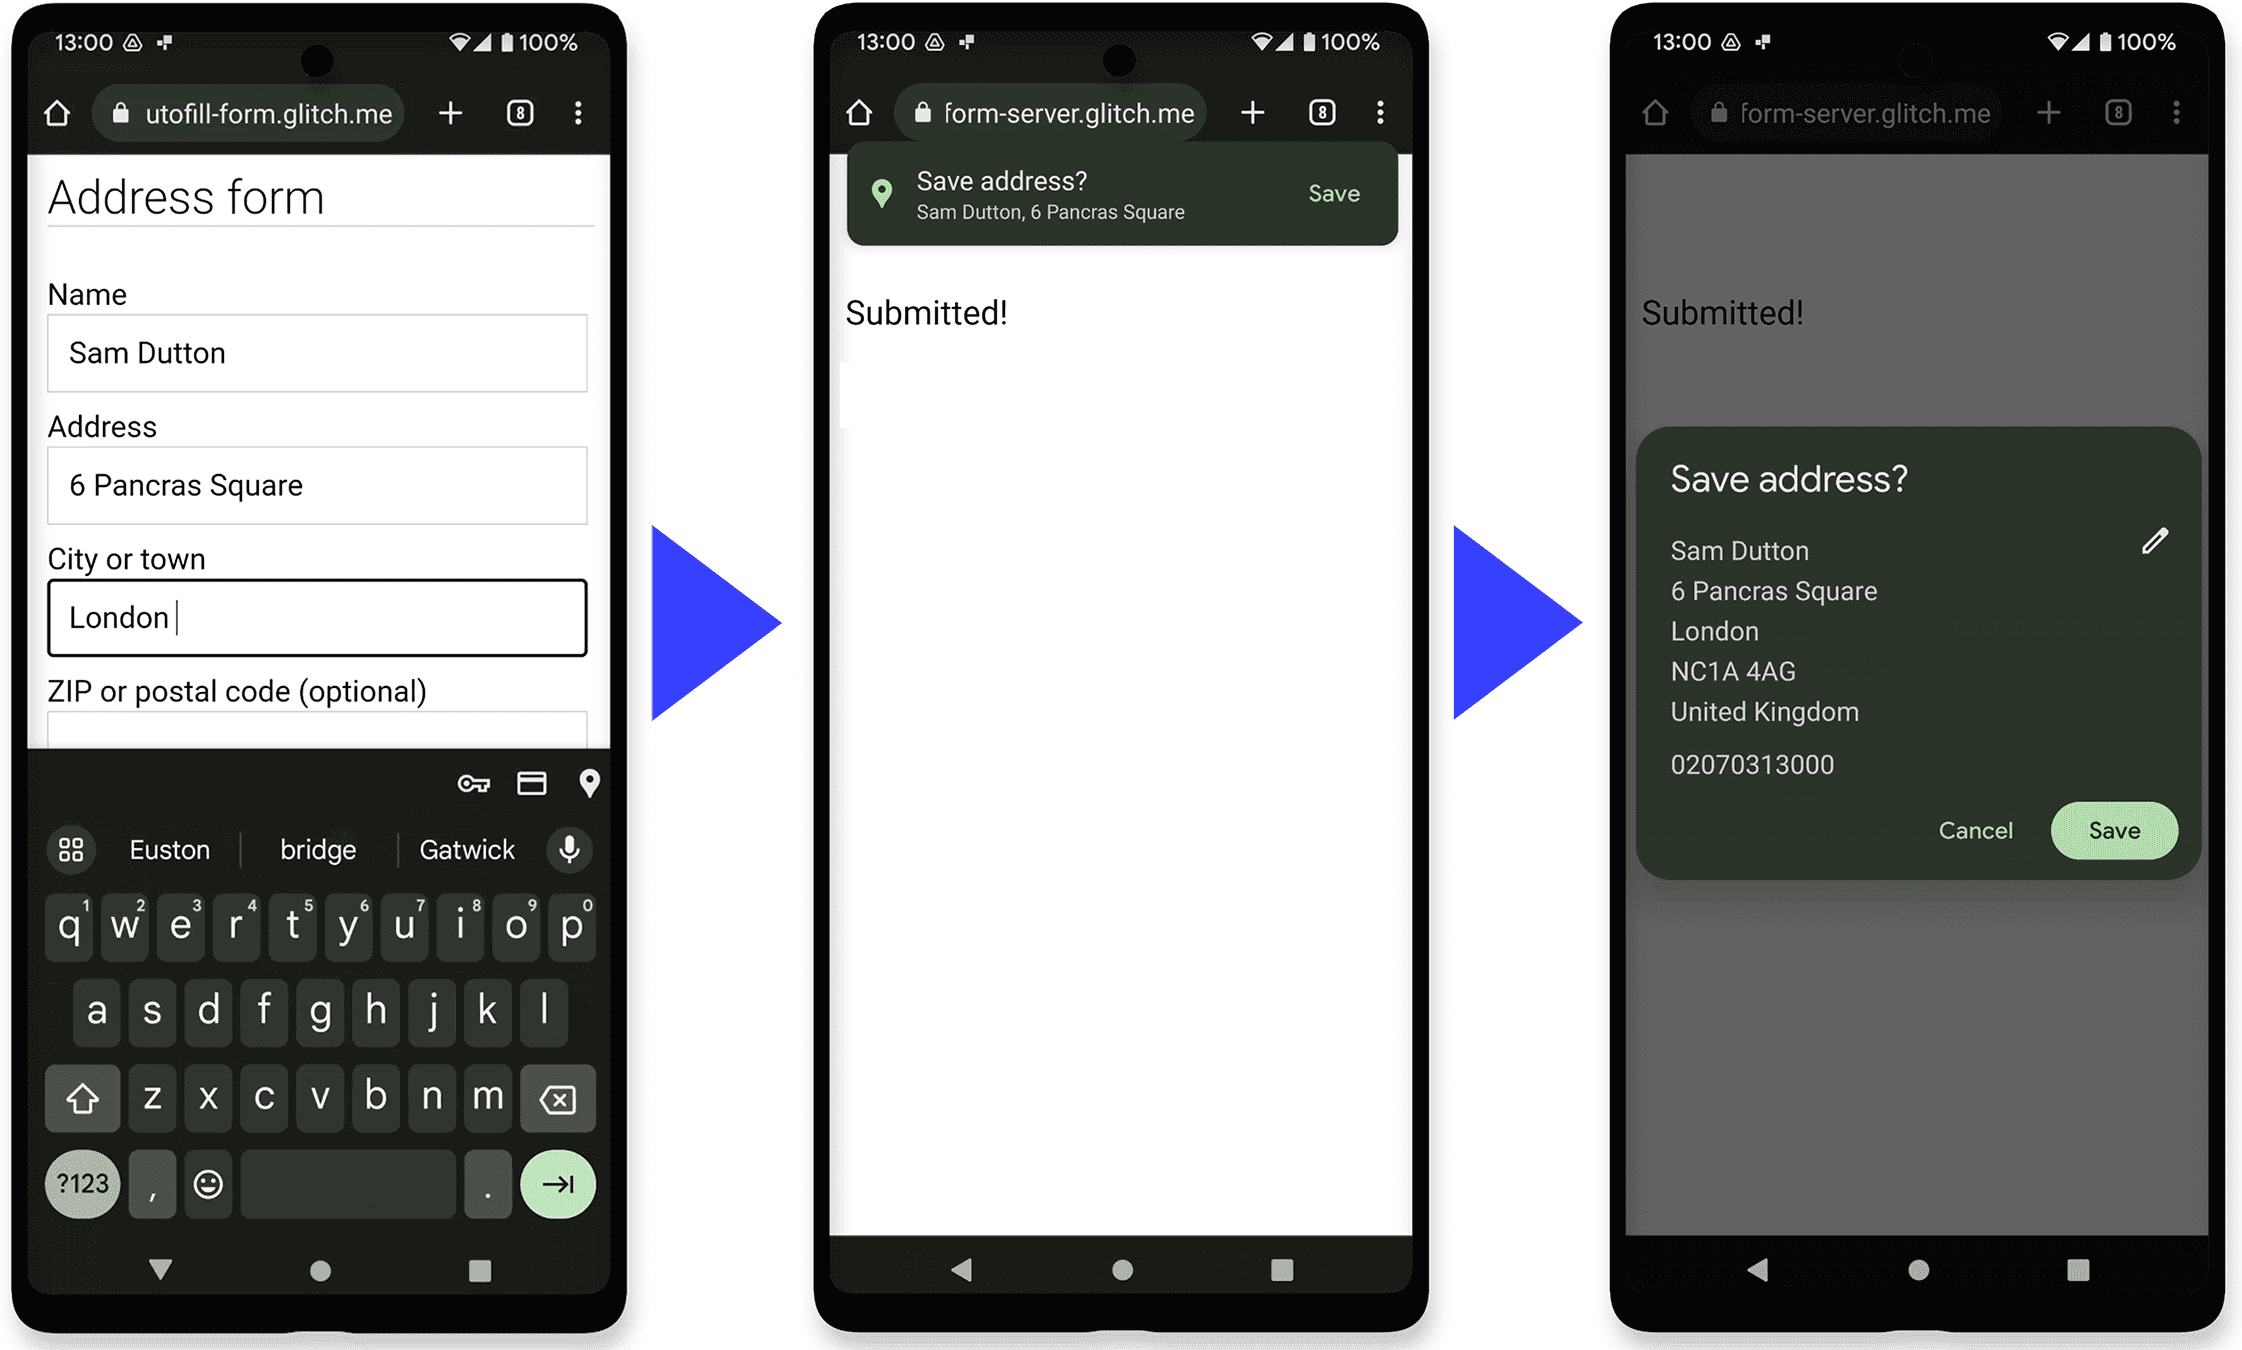 Tiga screenshot
Android: formulir alamat di Chrome, Isi Otomatis Chrome menawarkan untuk menyimpan alamat, lalu menampilkan
dialog untuk mengedit entri Isi Otomatis baru.